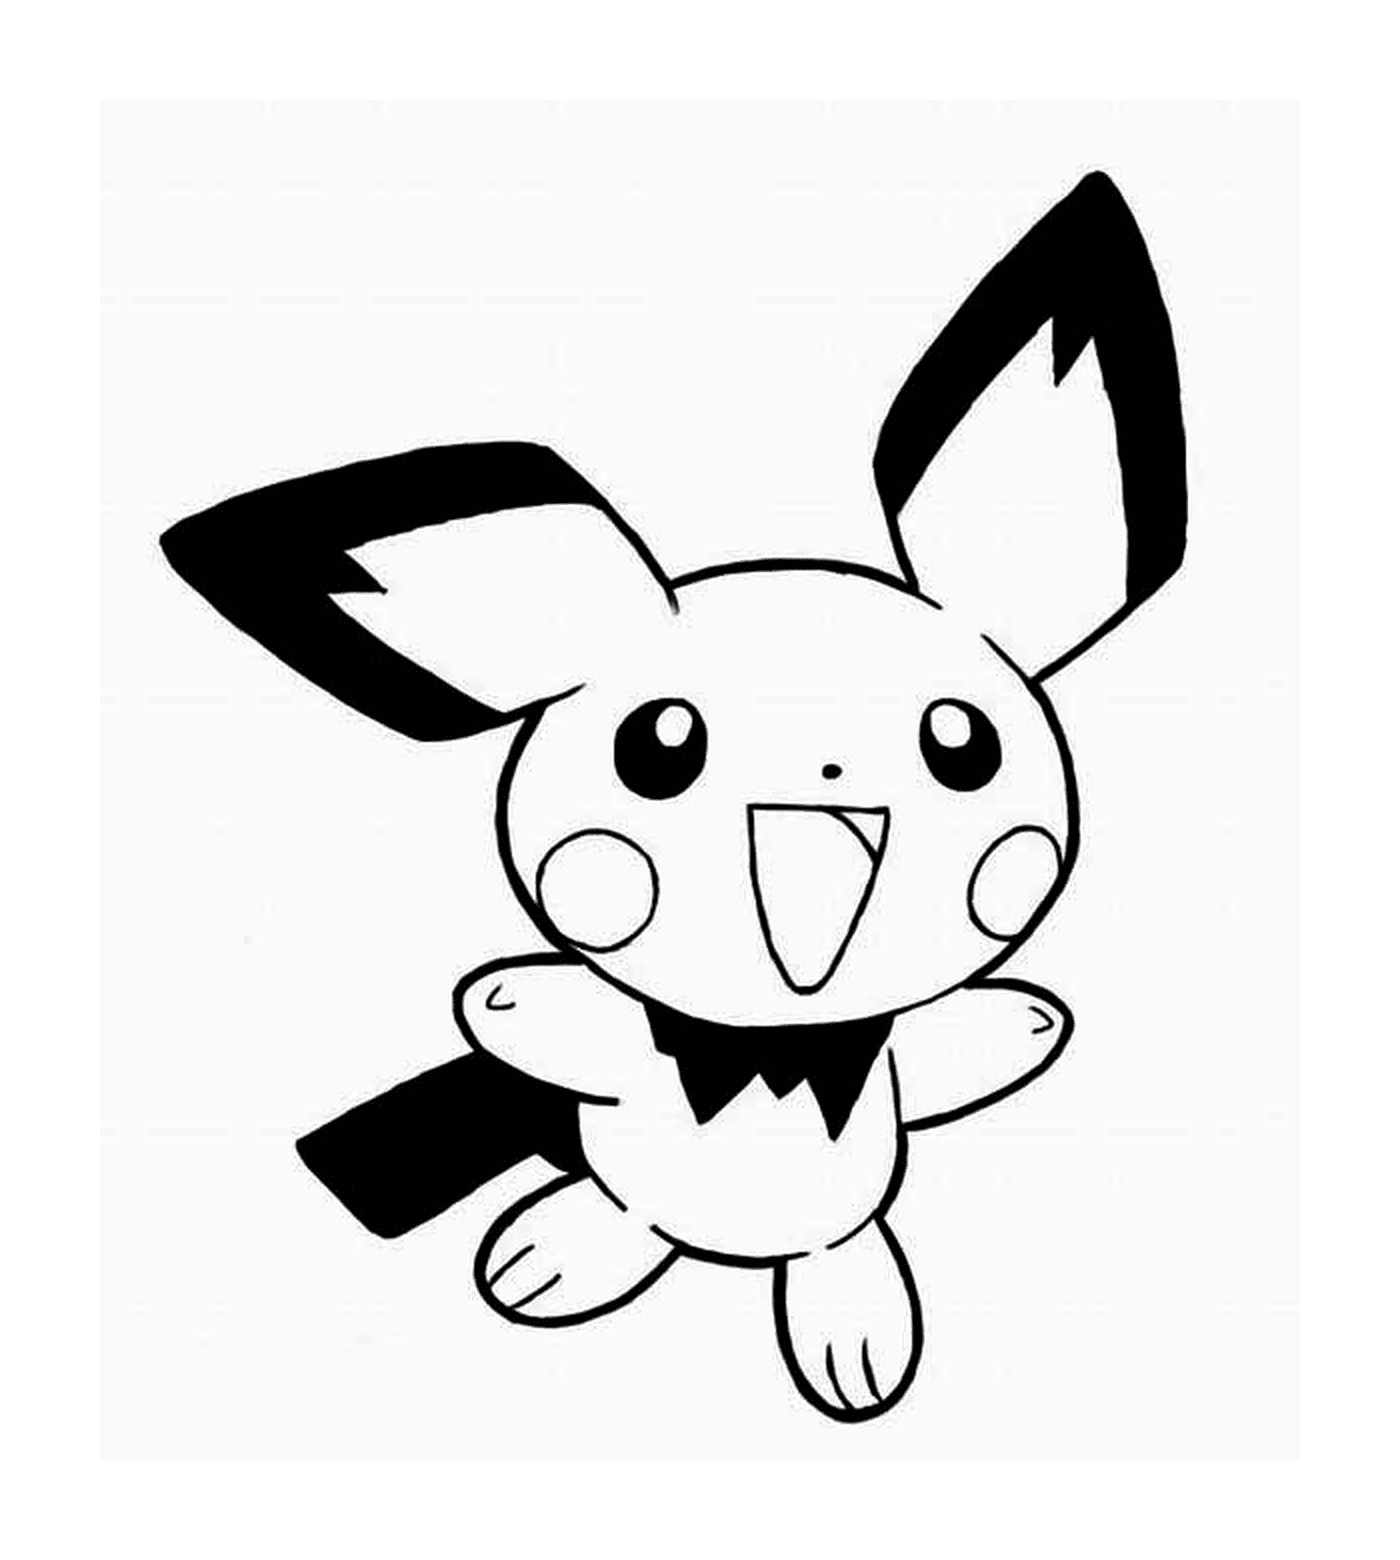   Pikachu avec une expression mignonne 